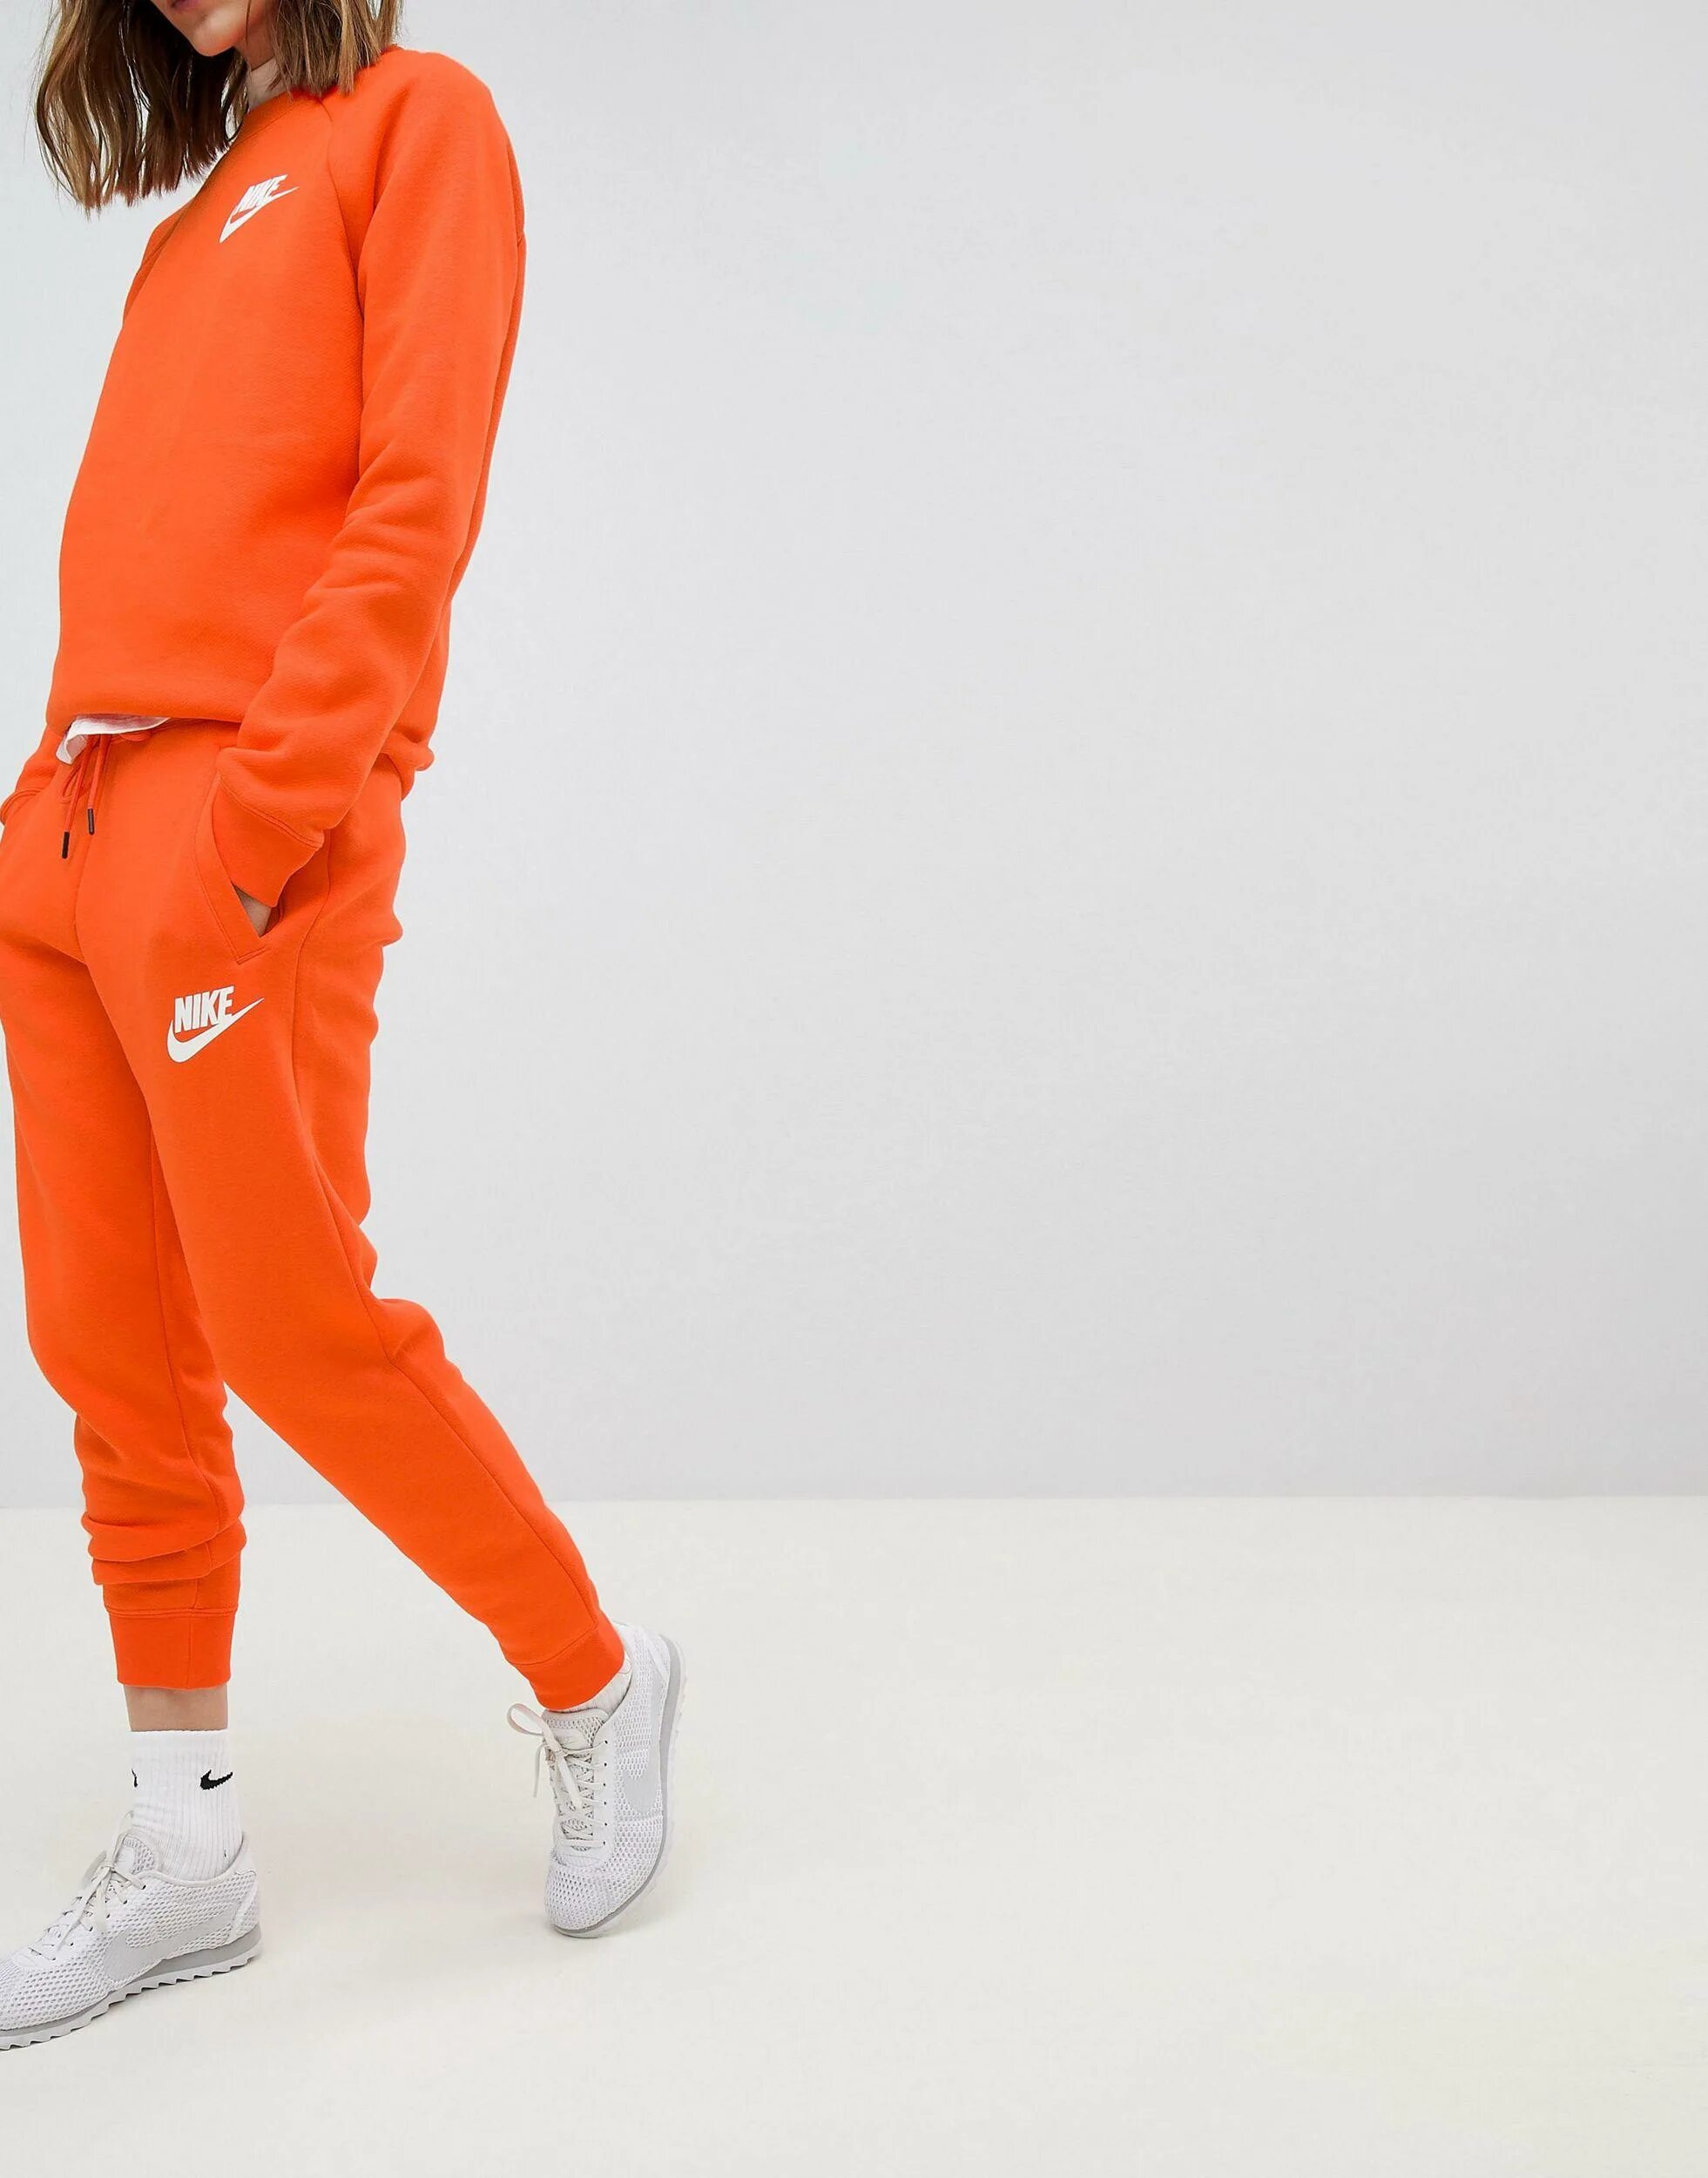 Костюм Nike Drill оранжевый. Оранжевый костюм найк мужской. Nike костюм спортивный оранжевый Drill. Джоггеры найк оранжевые.